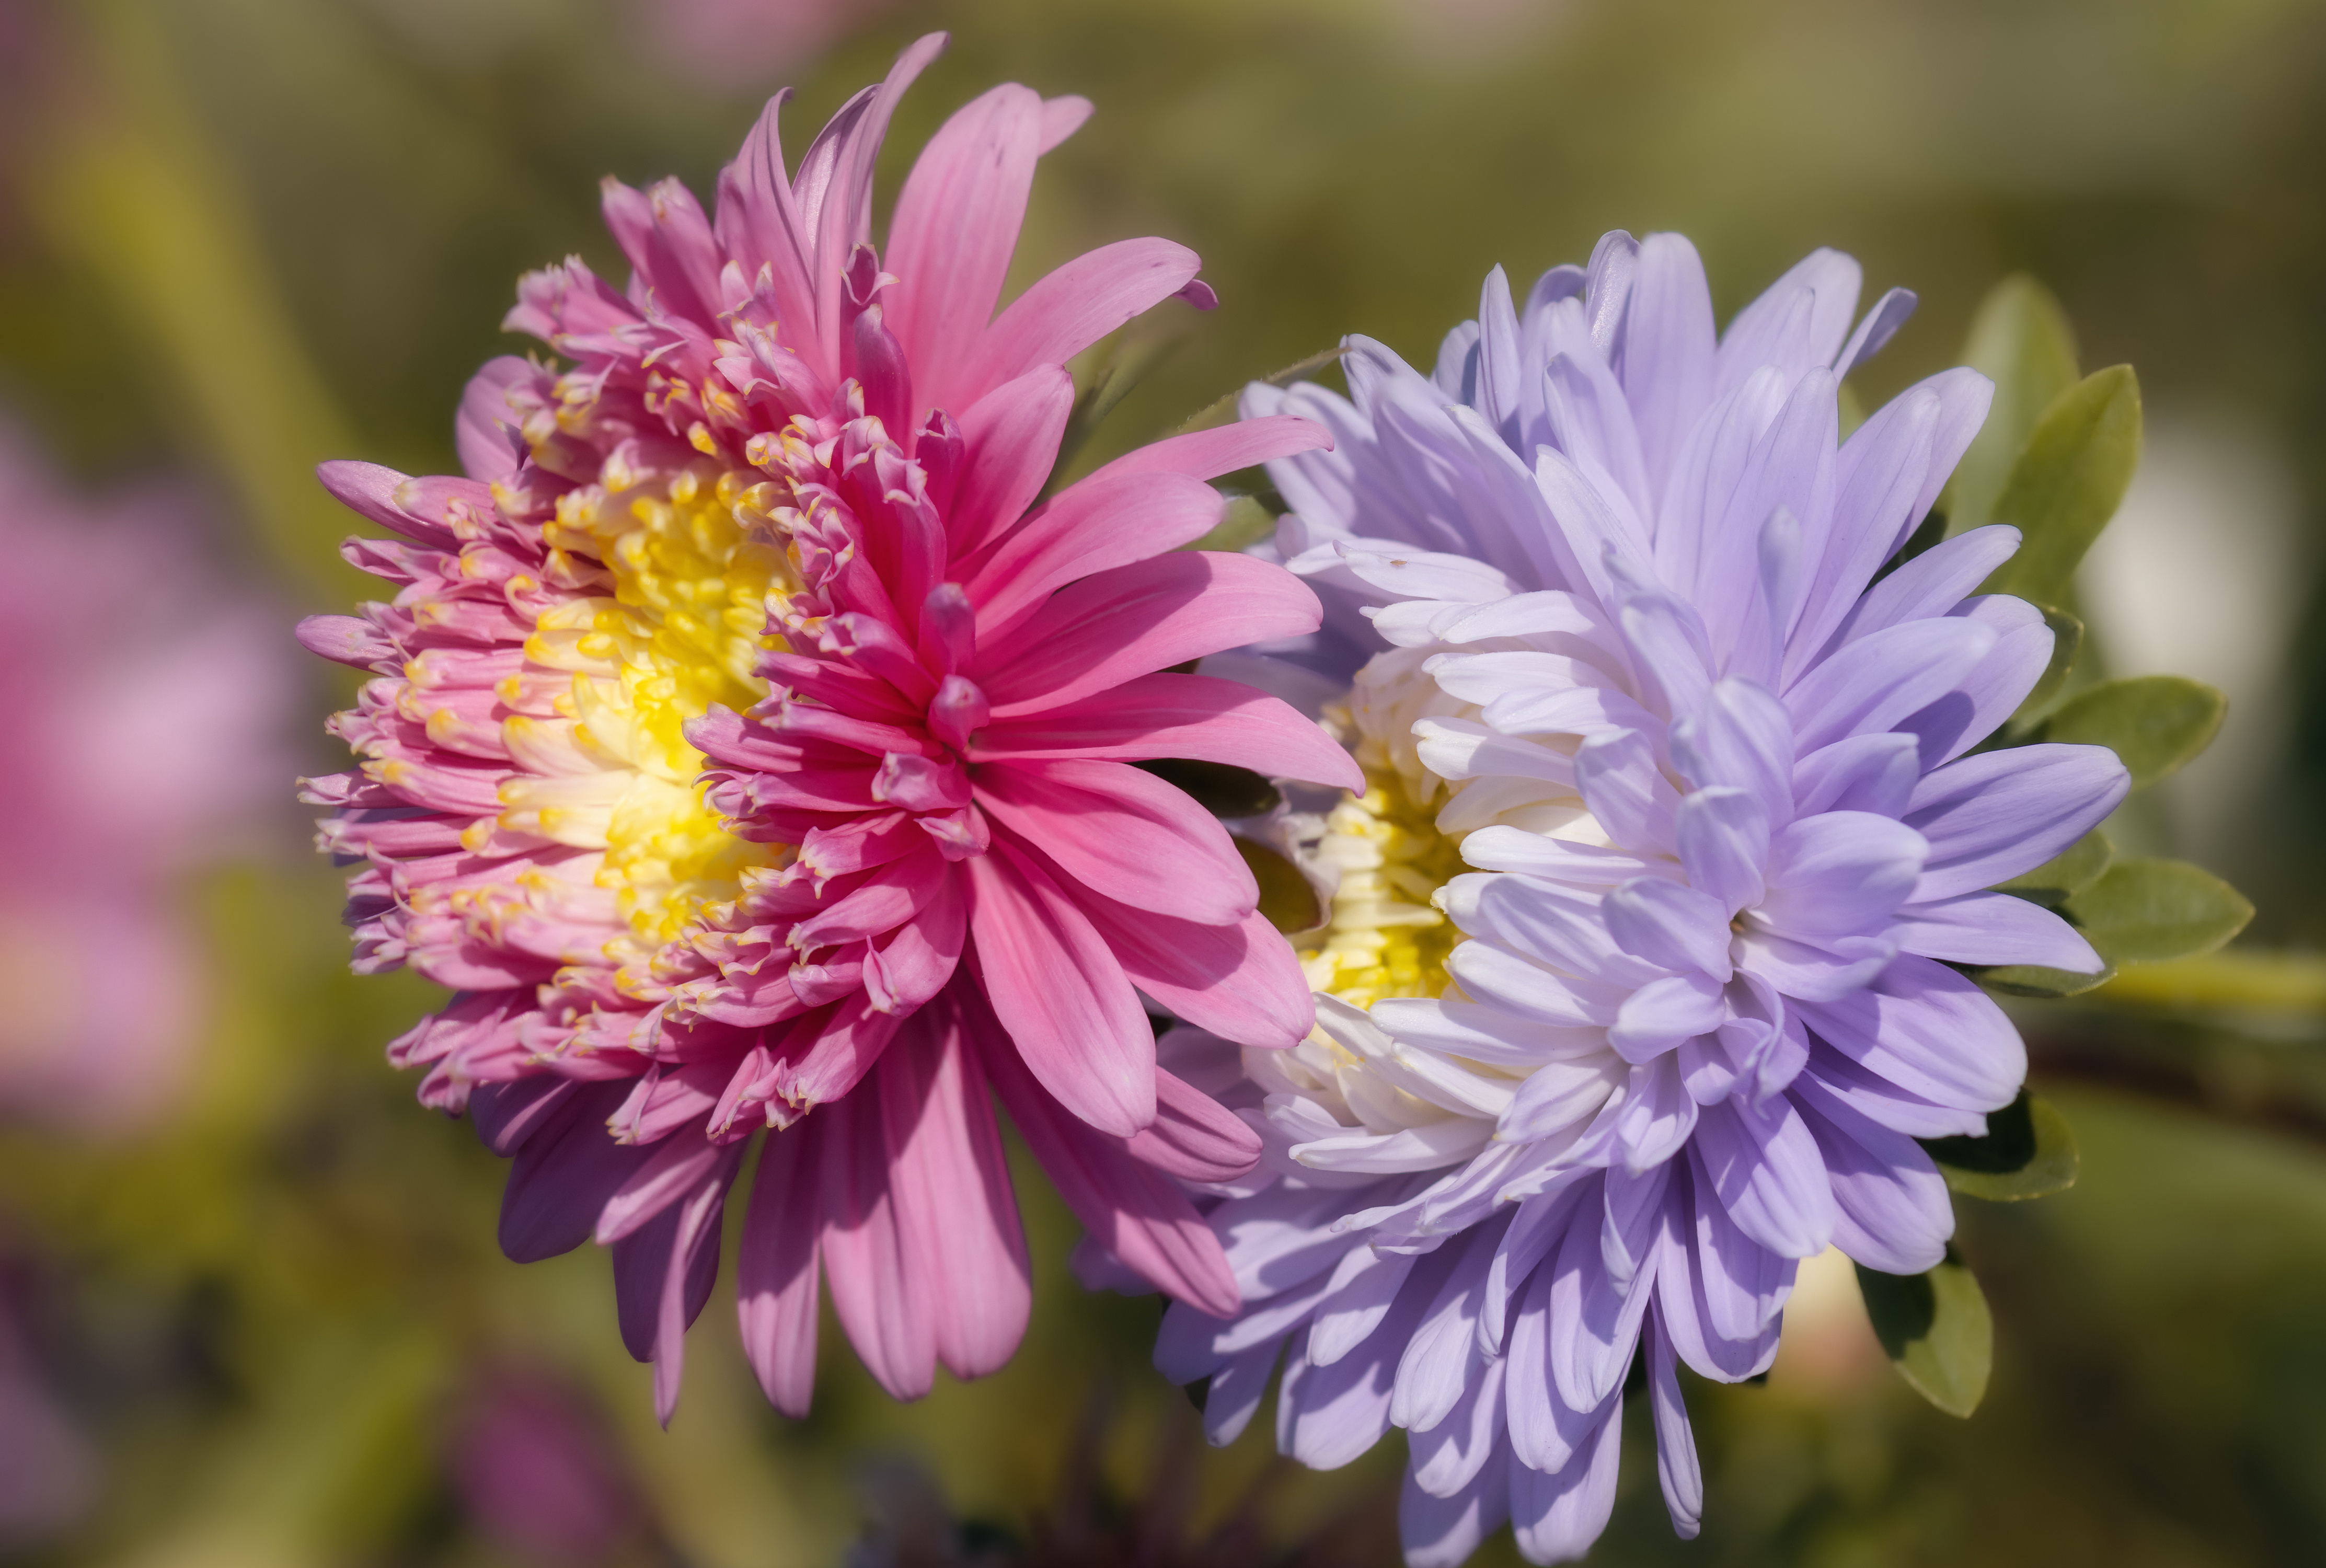 Фото Размытый фон вдвоем Астры цветок Крупным планом боке 2 два две Двое Цветы вблизи